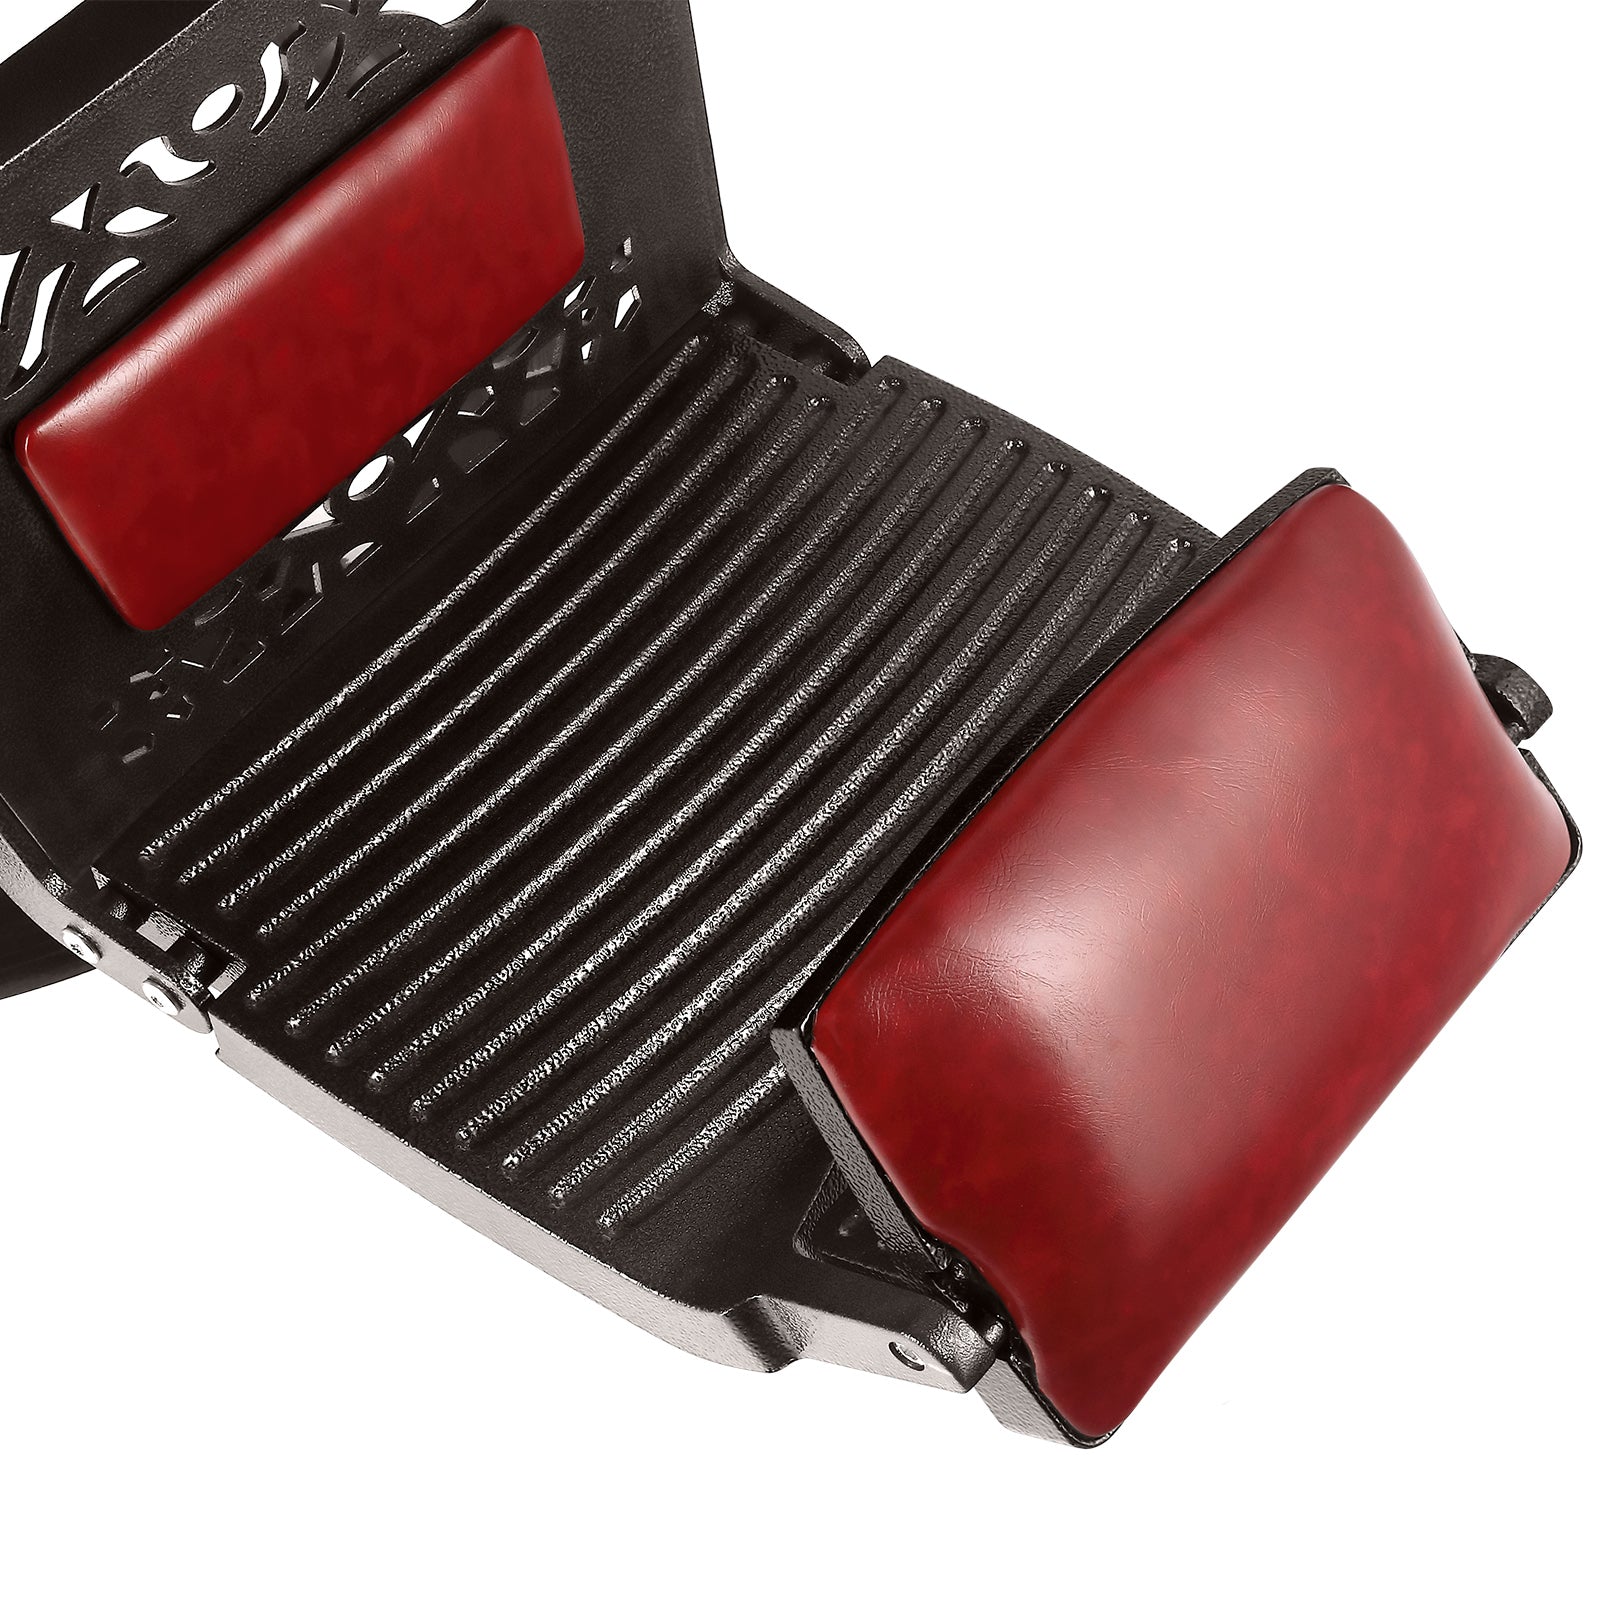 #5123 Vintage Heavy Duty Hydraulic Reclining Barber Chair